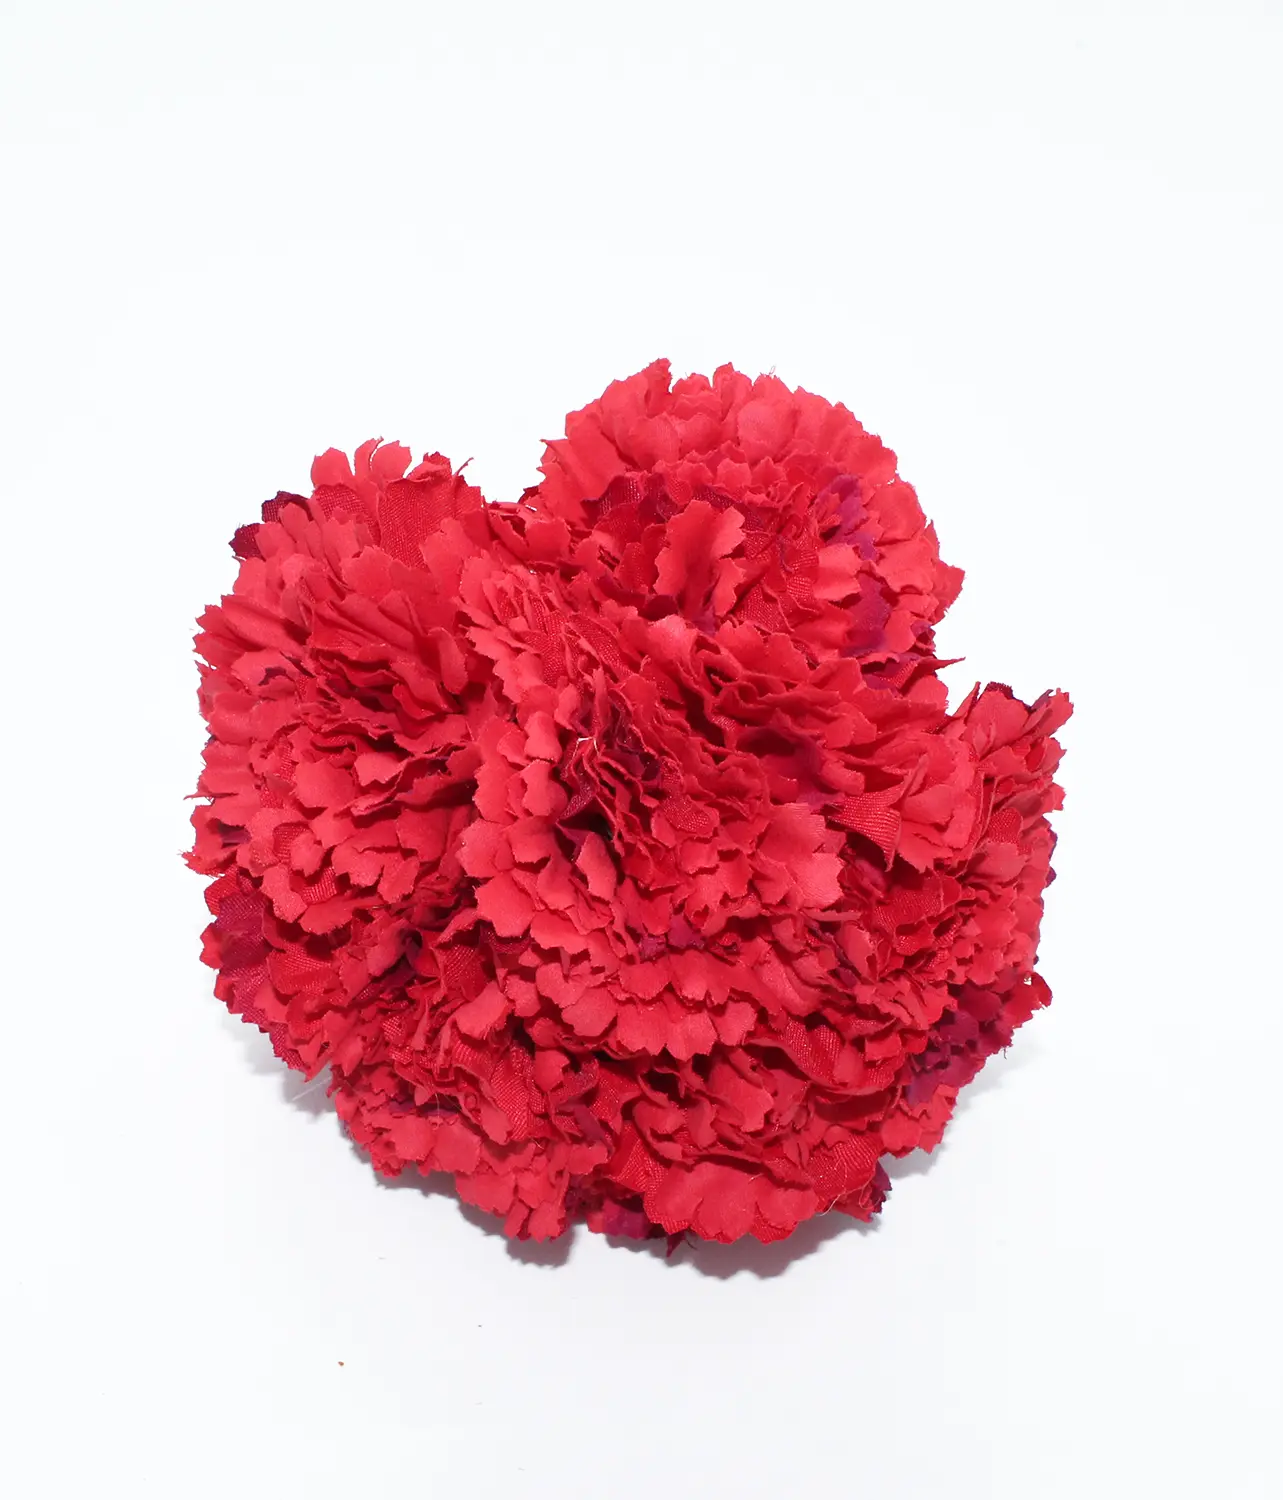 Ramillete de 6 claveles, el complemento de flamenca que necesitas. Color rojo.